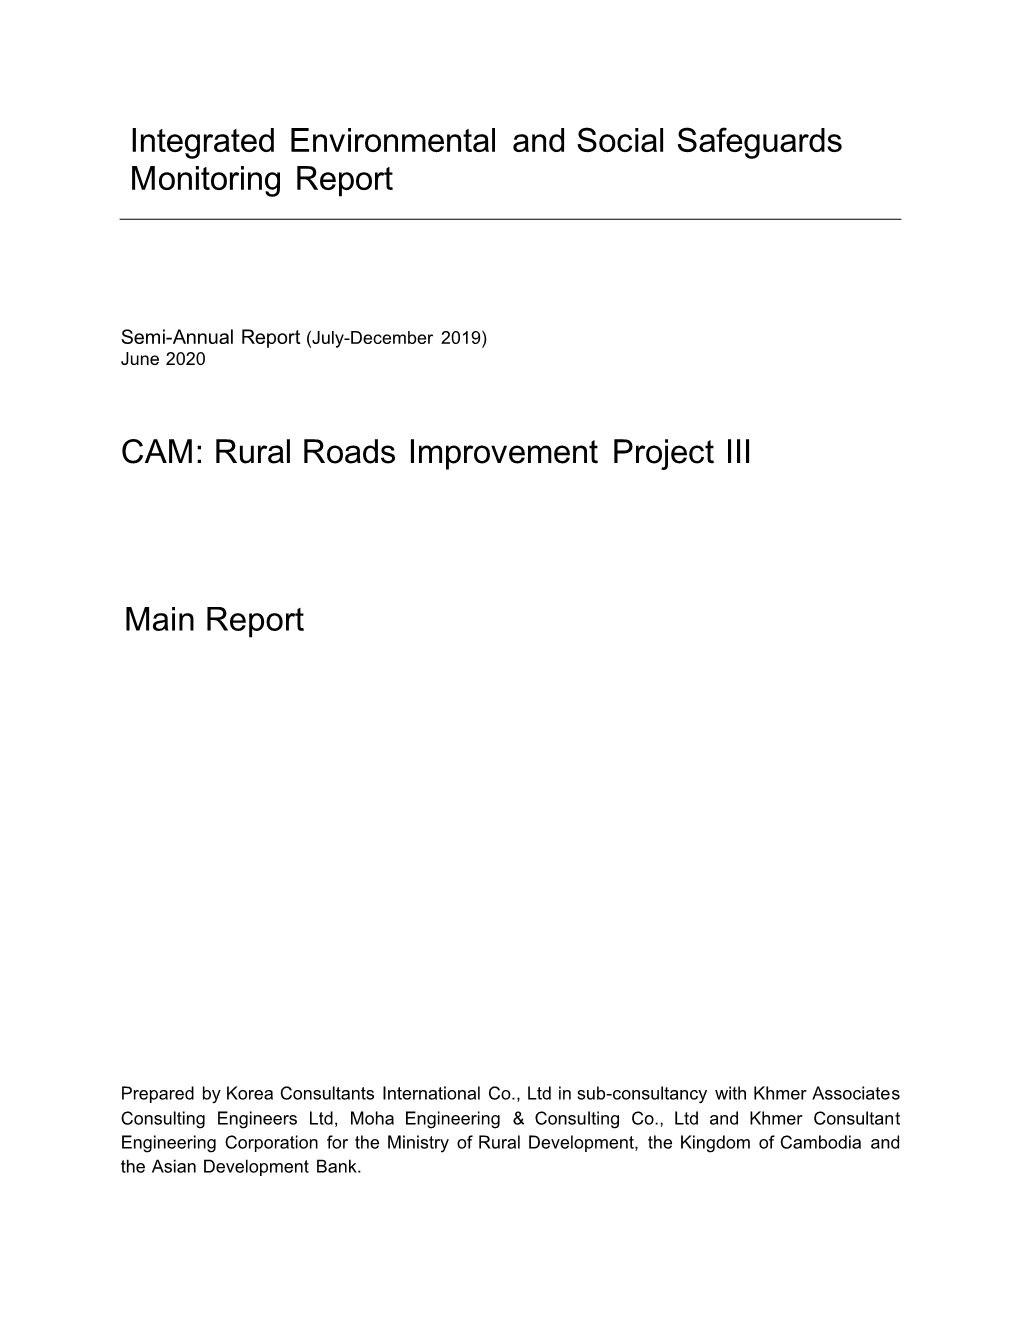 Environmental and Social Monitoring Report